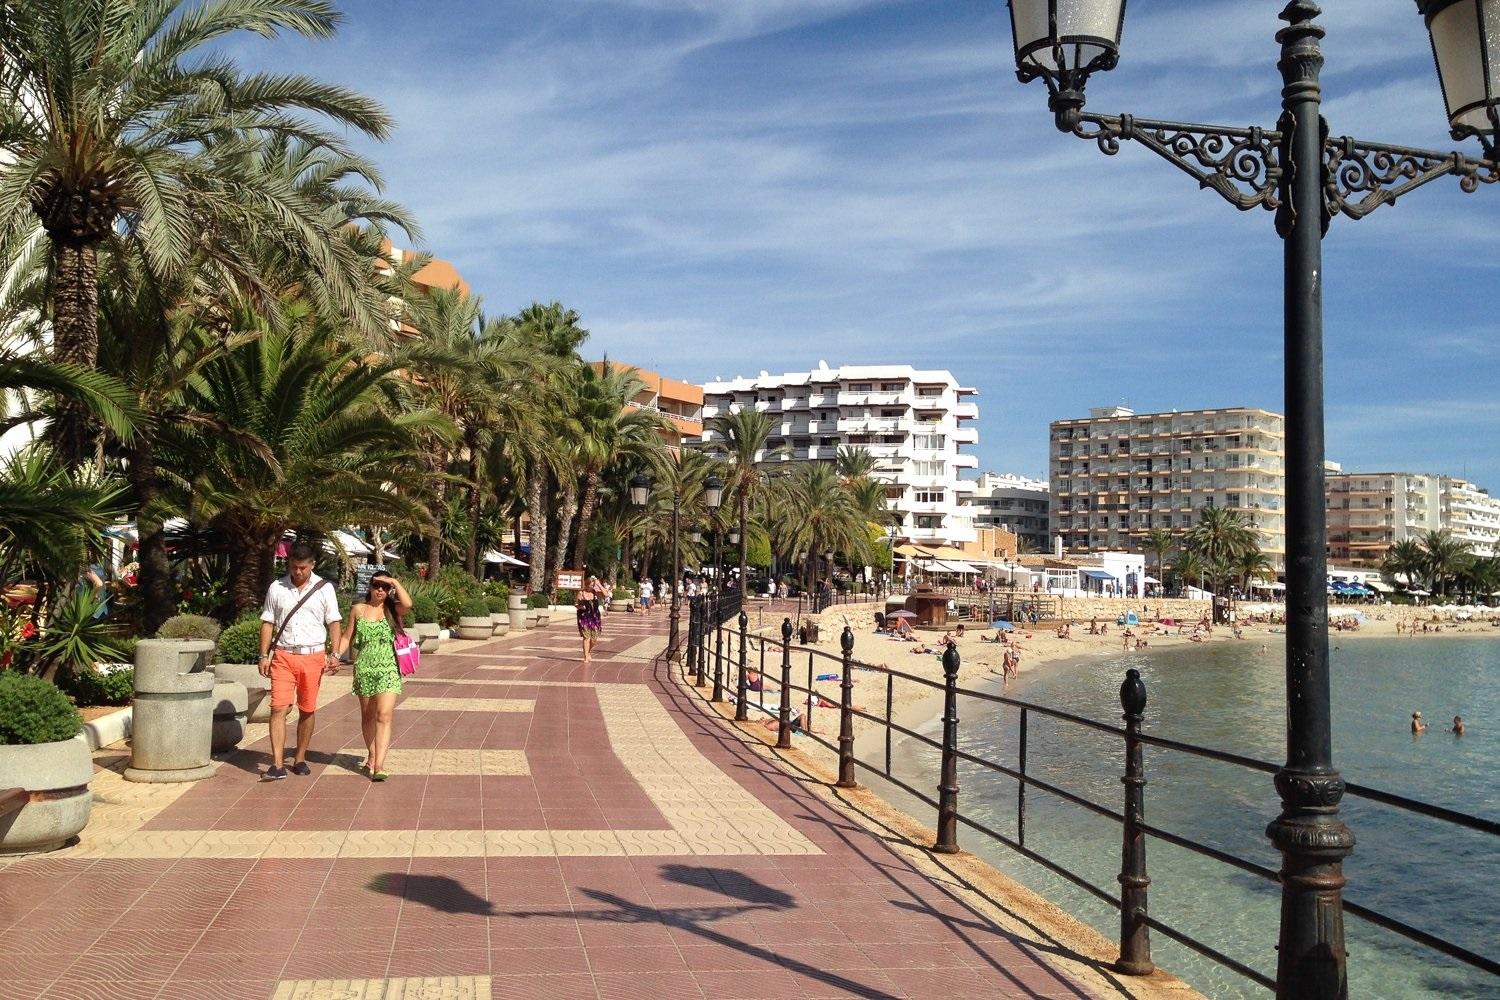 Imagen del paseo marítimo de Santa Eulalia (Ibiza). Archivo.